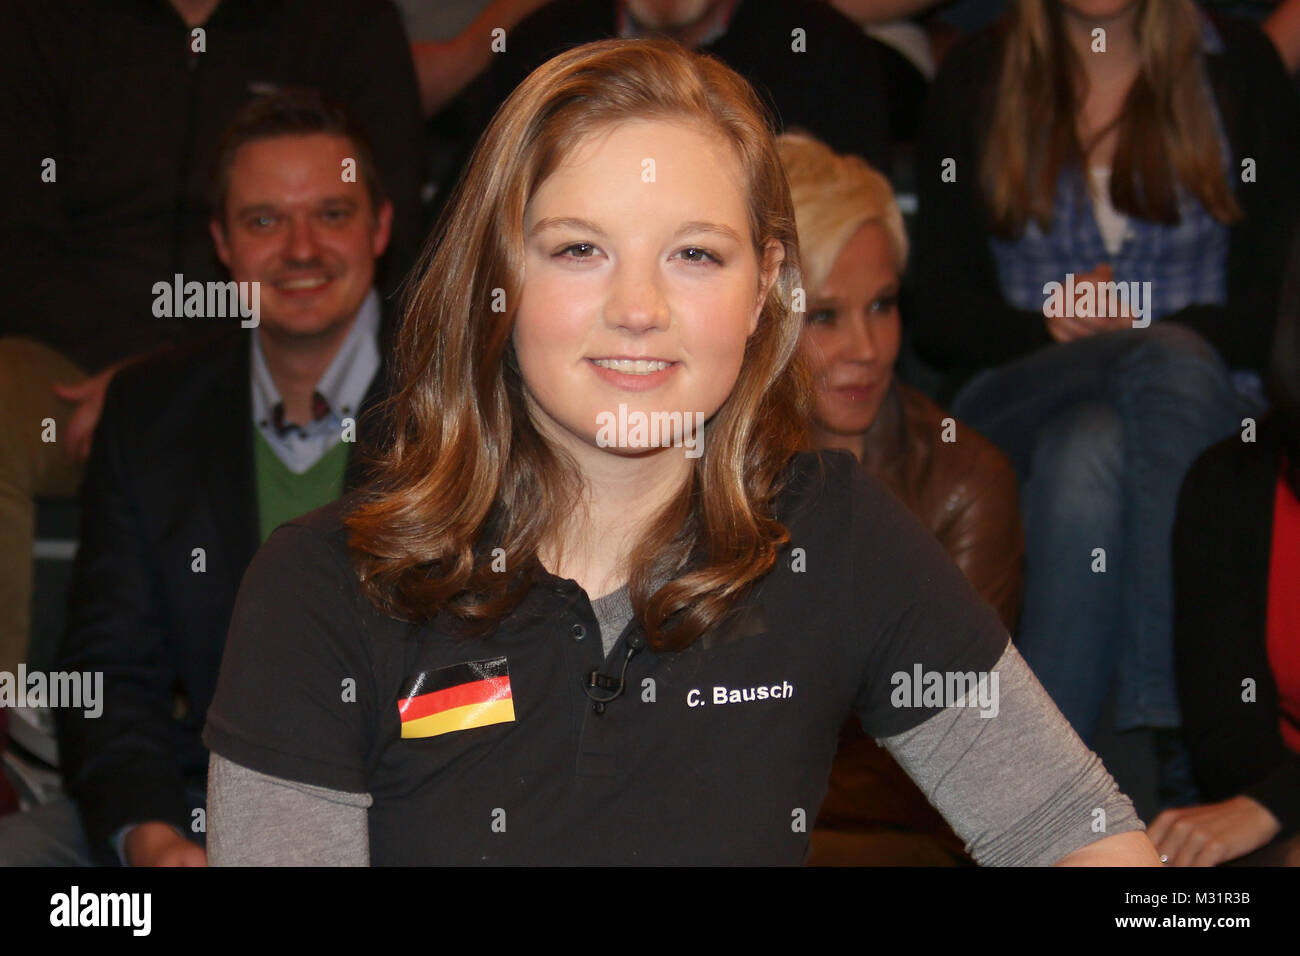 Chantal Bausch (Sportlerin mit Spenderherz), Lanz, Aufzeichnung 2 vom 25.02.2014, Hamburg Stock Photo